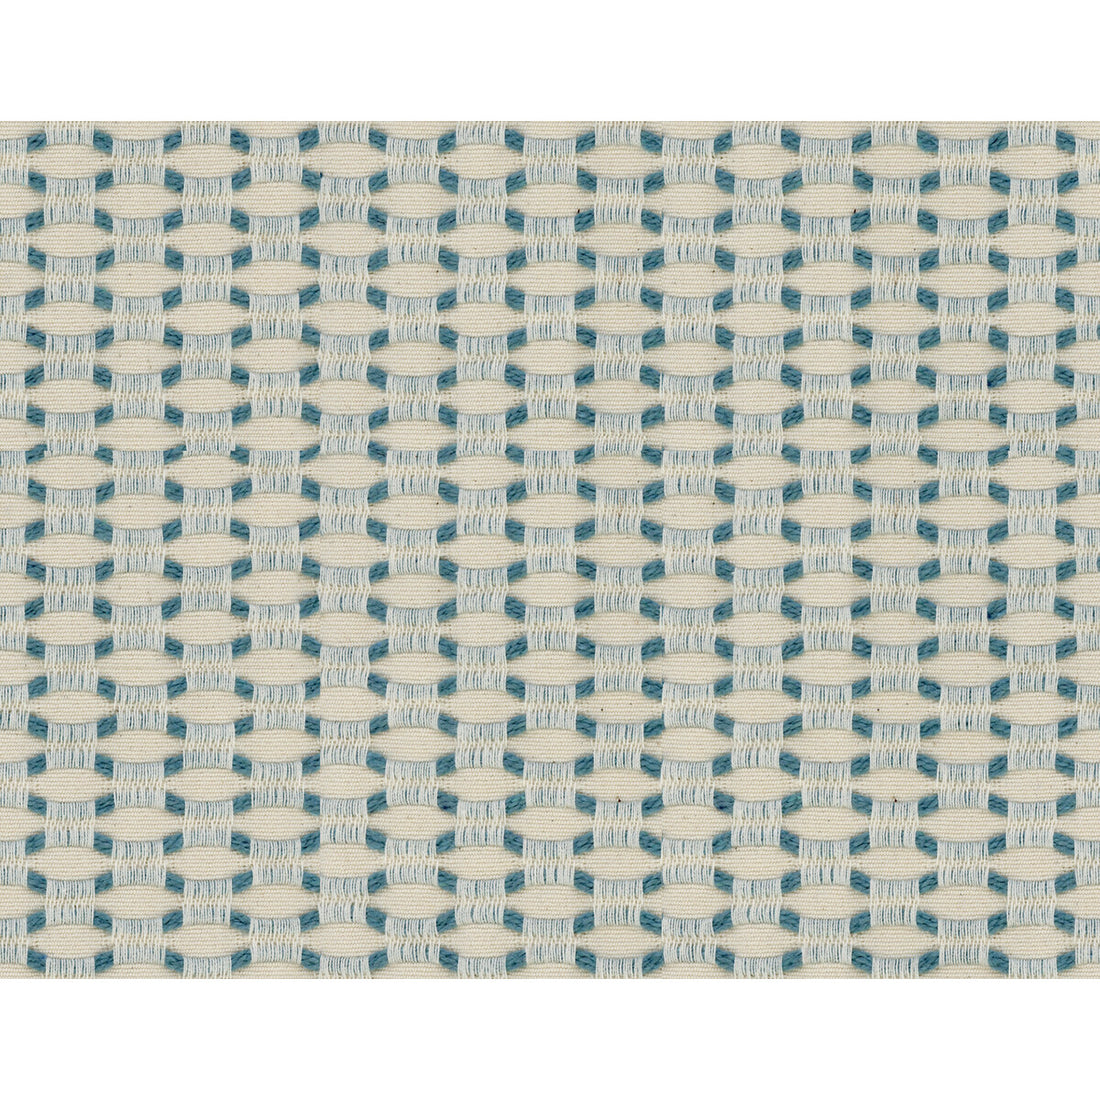 Kravet Basics fabric in 34516-1615 color - pattern 34516.1615.0 - by Kravet Basics